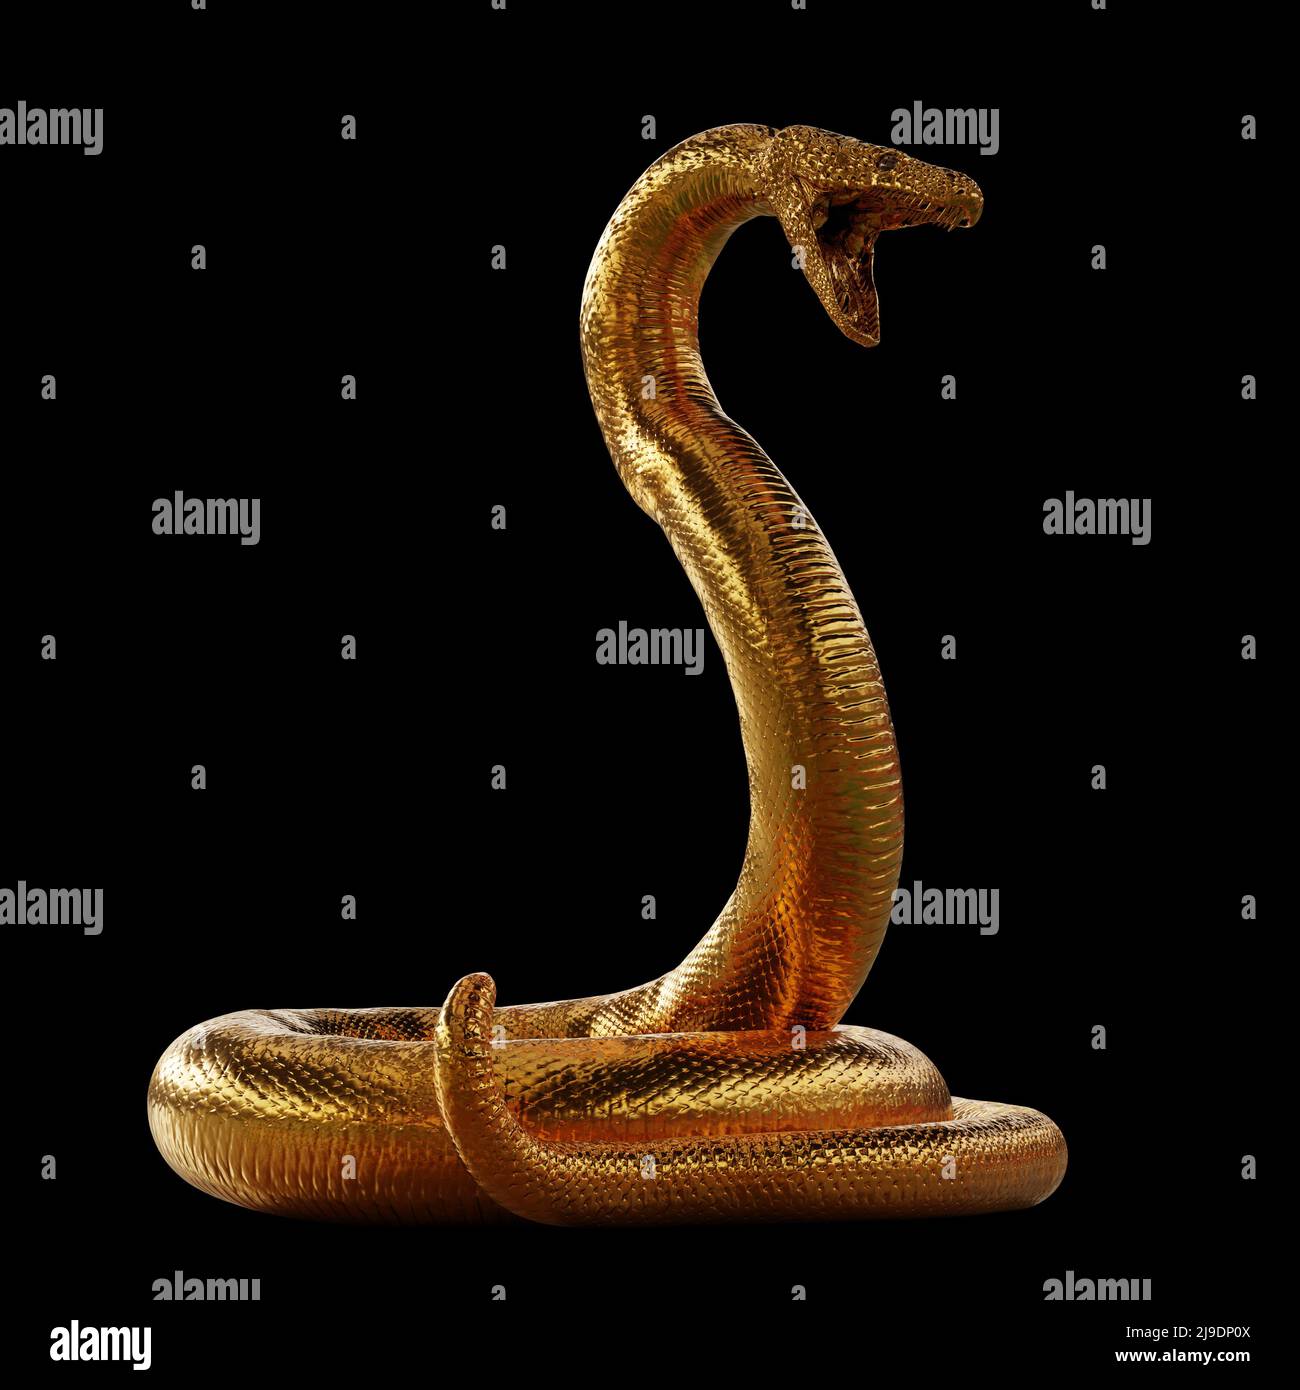 3d Illustration King Cobra The World's Longest Venomous Snake Isolated on  Black Background, King Cobra Snake, 3d Rendering Stock Photo - Alamy